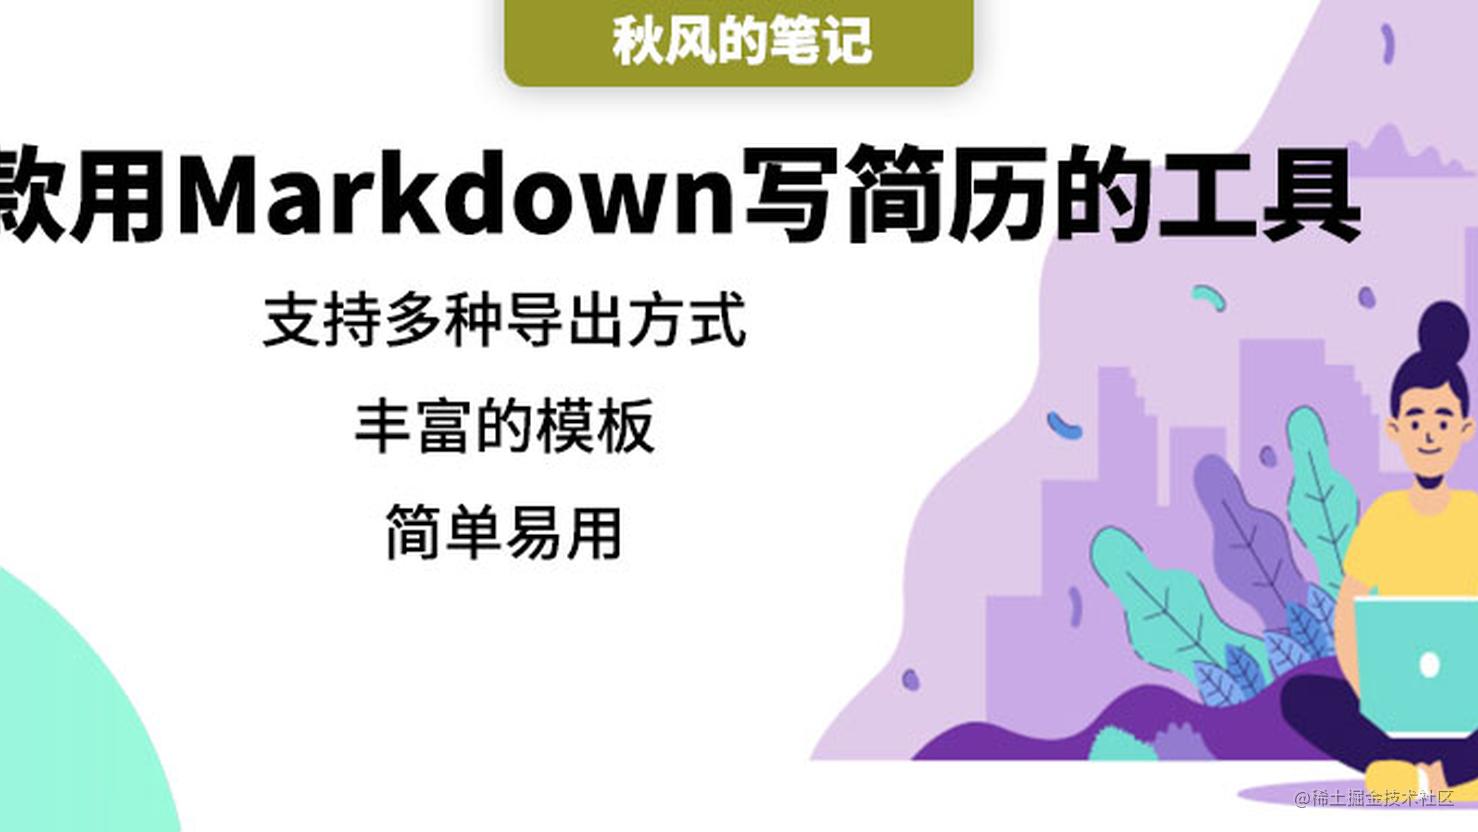 只用 Markdown 就写出好看的简历，在线简历应用闪亮登场！